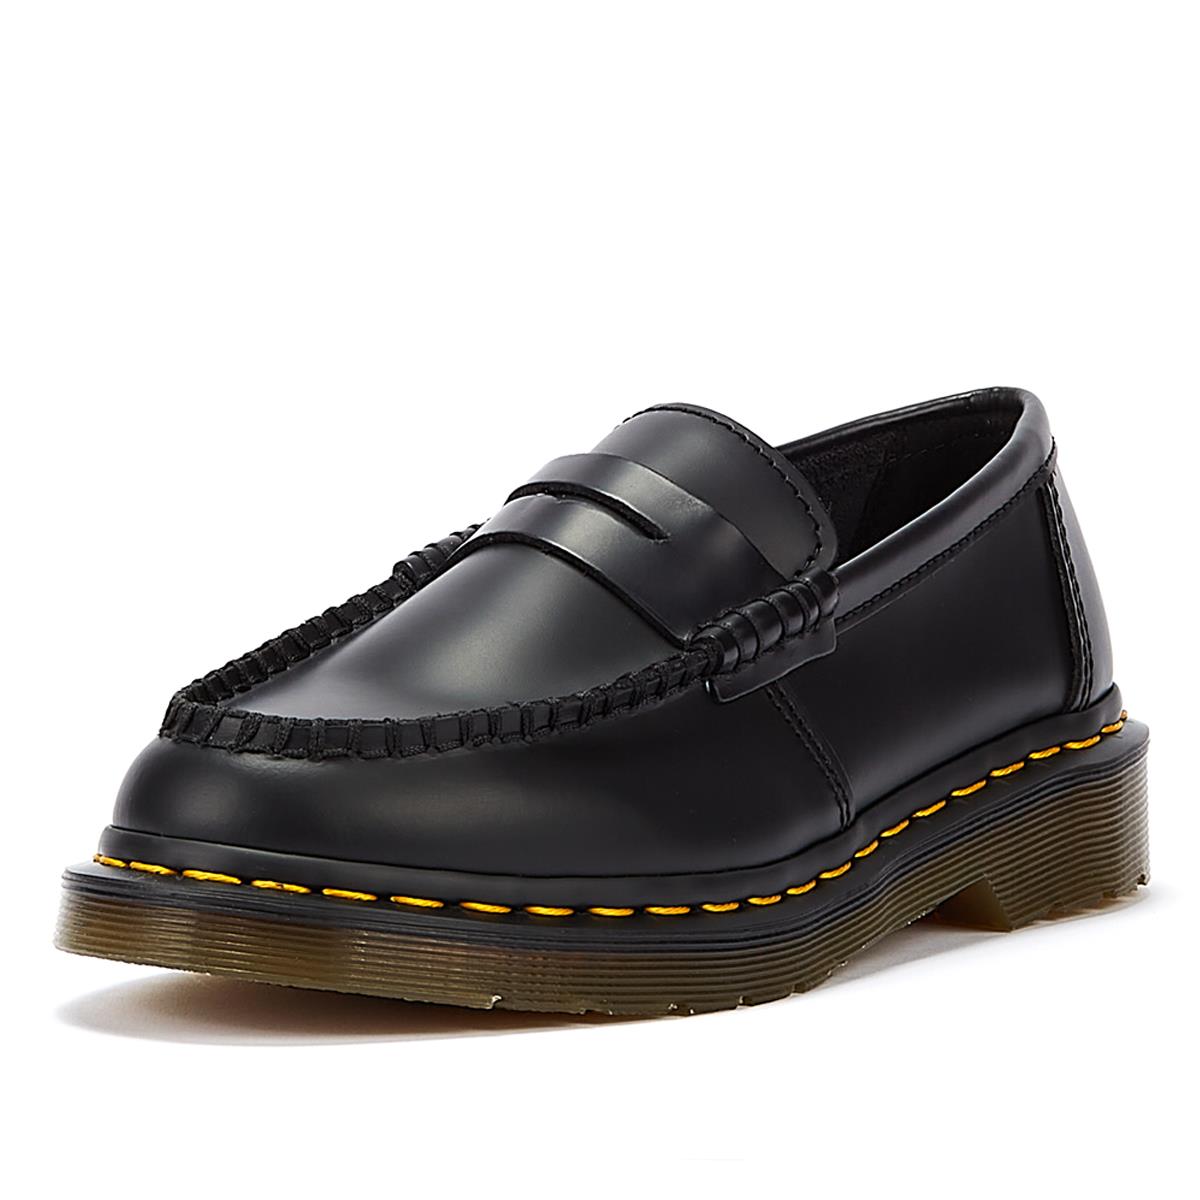 Dr. Martens Penton Penny Smooth Loafer Black Comfort Shoes